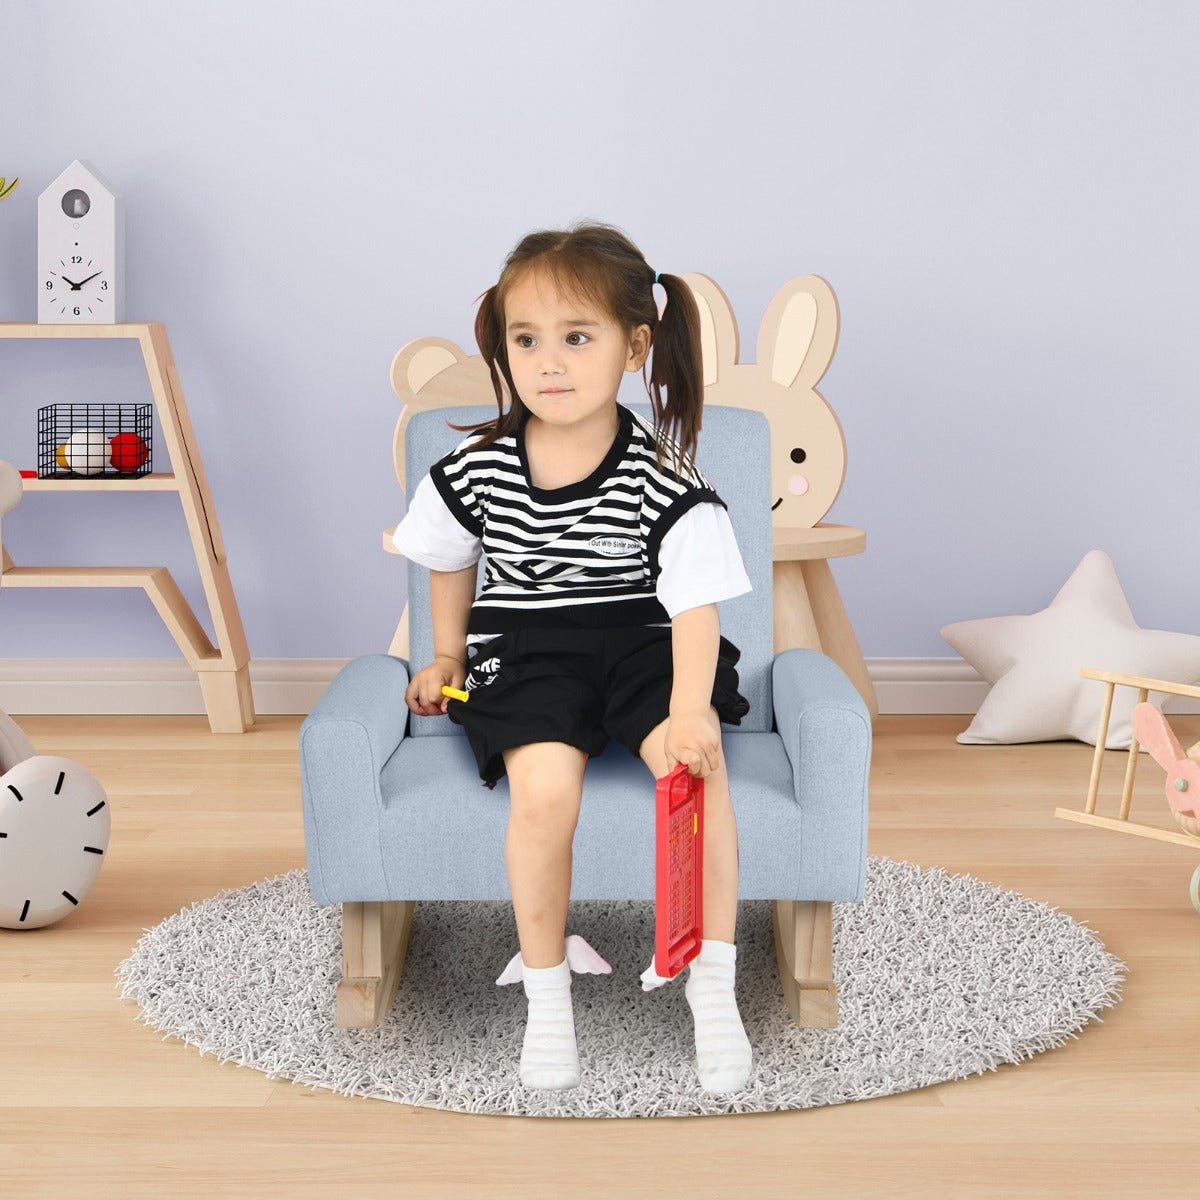 Blue Kids Rocking Seat - Wood Legs, Anti-tipping Design, Safe and Fun